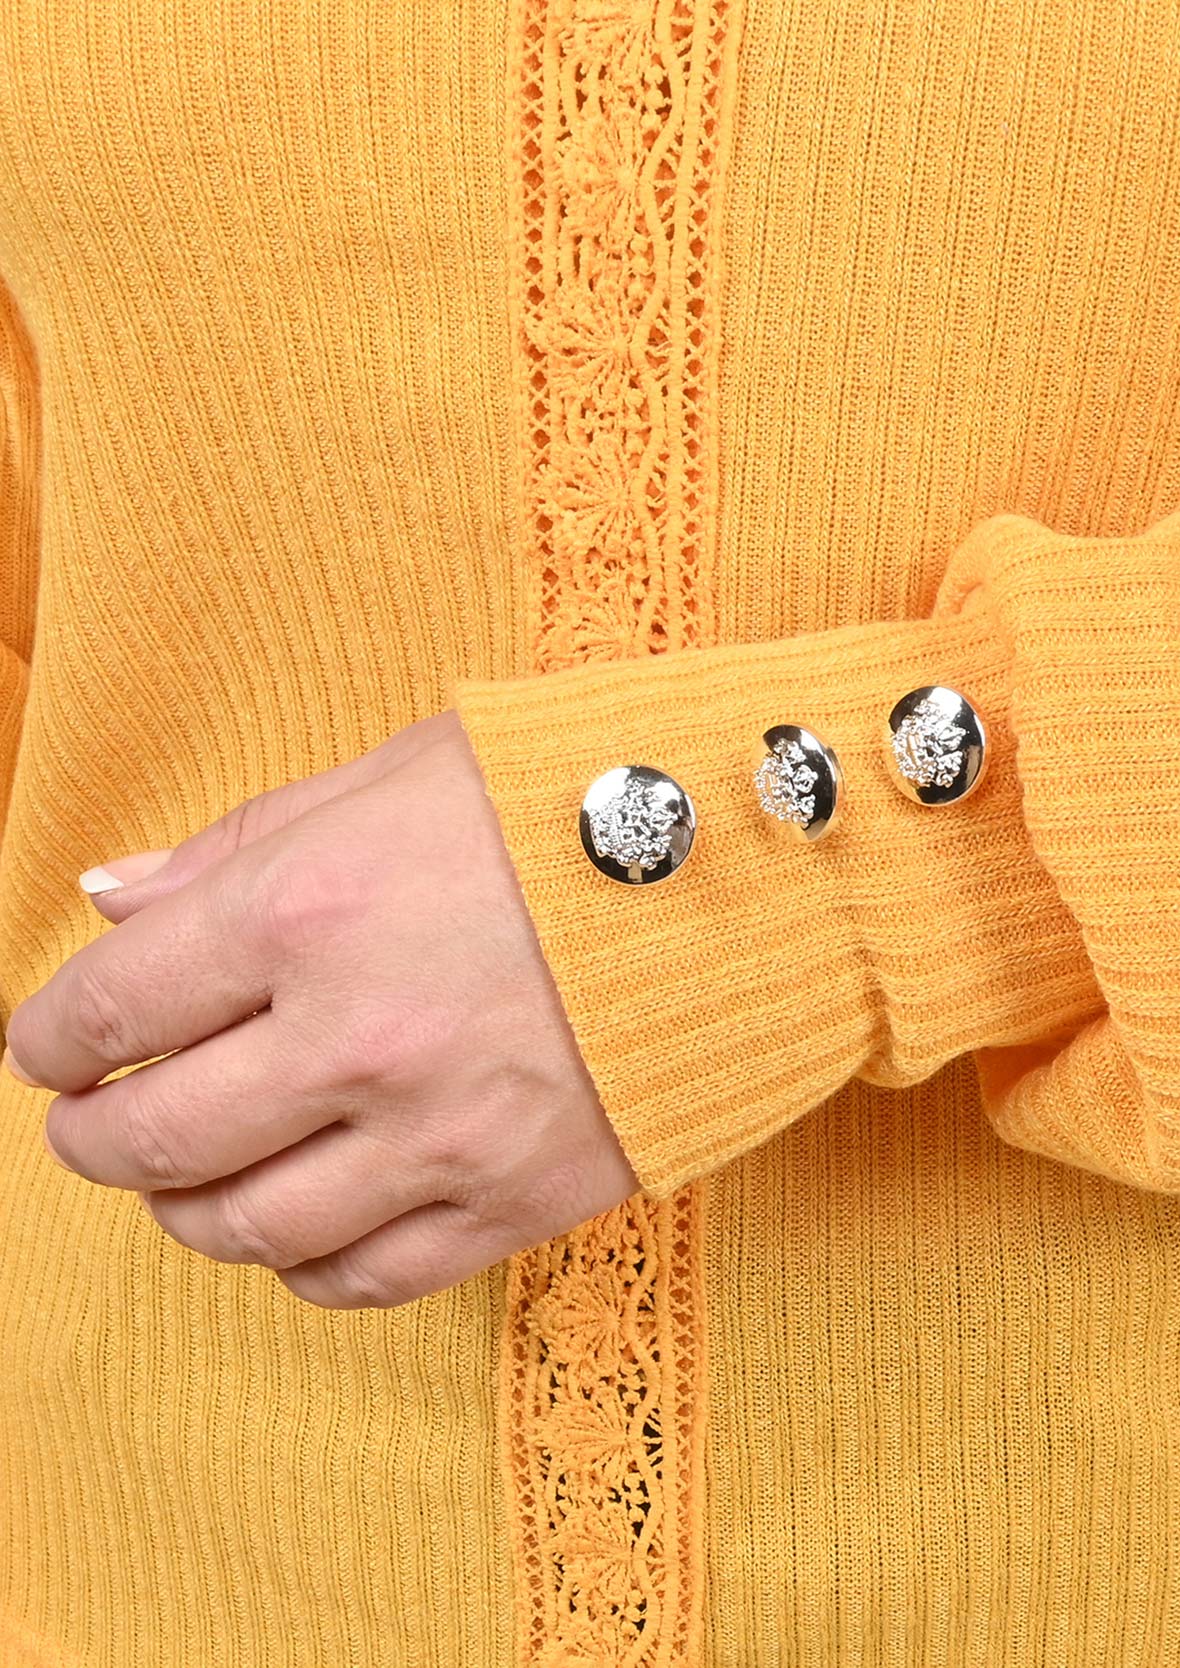 Lace Trim V-Neck Knit Sweater